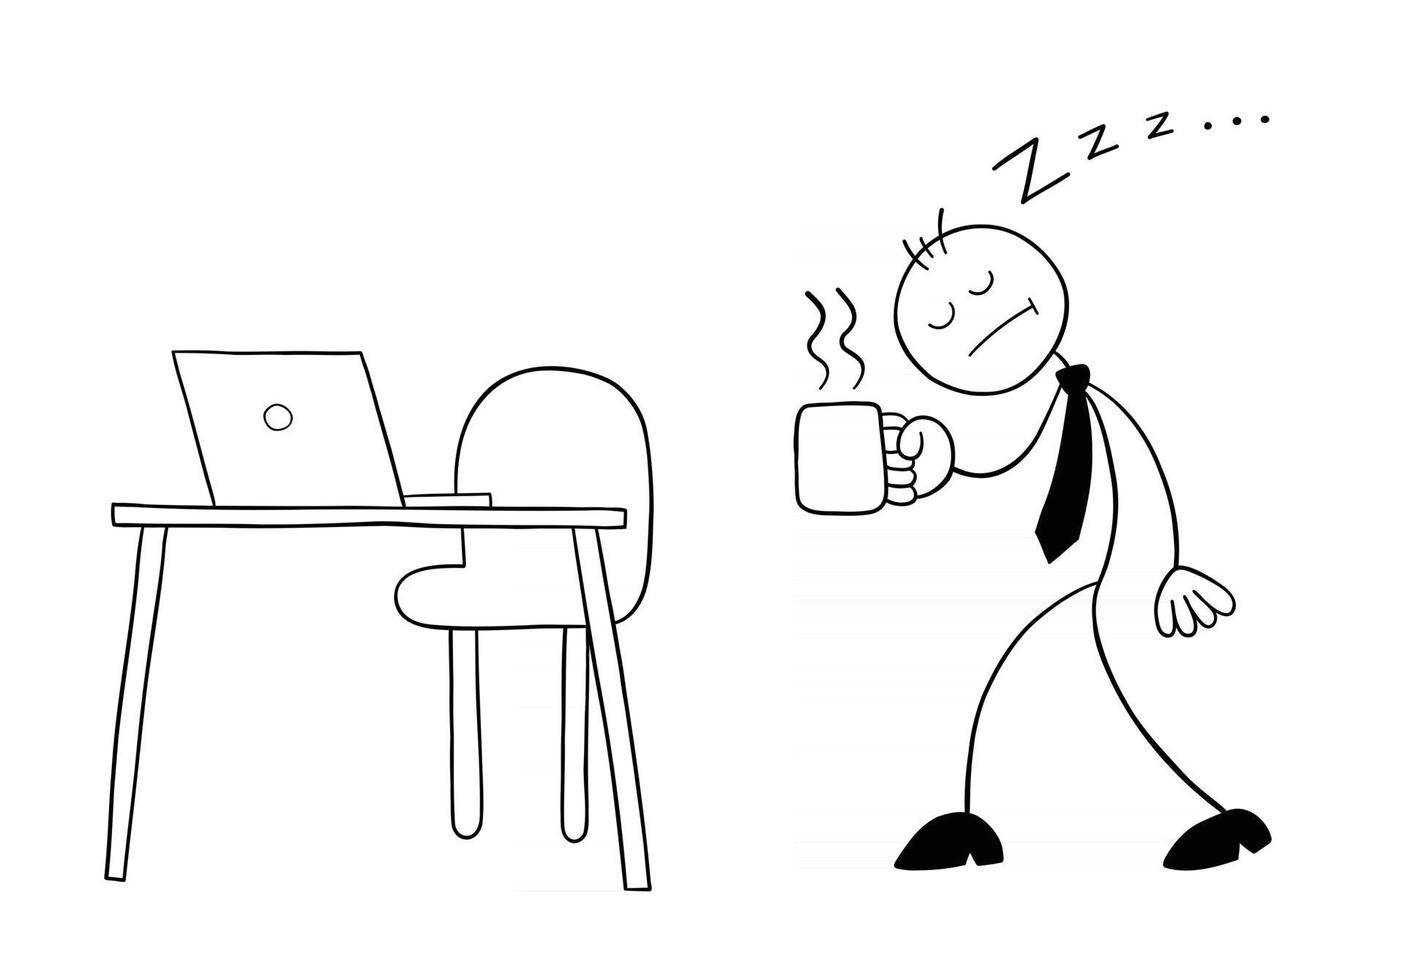 stickman affärsman karaktär mycket sömnig gå till sitt skrivbord med kaffe vektor tecknad illustration